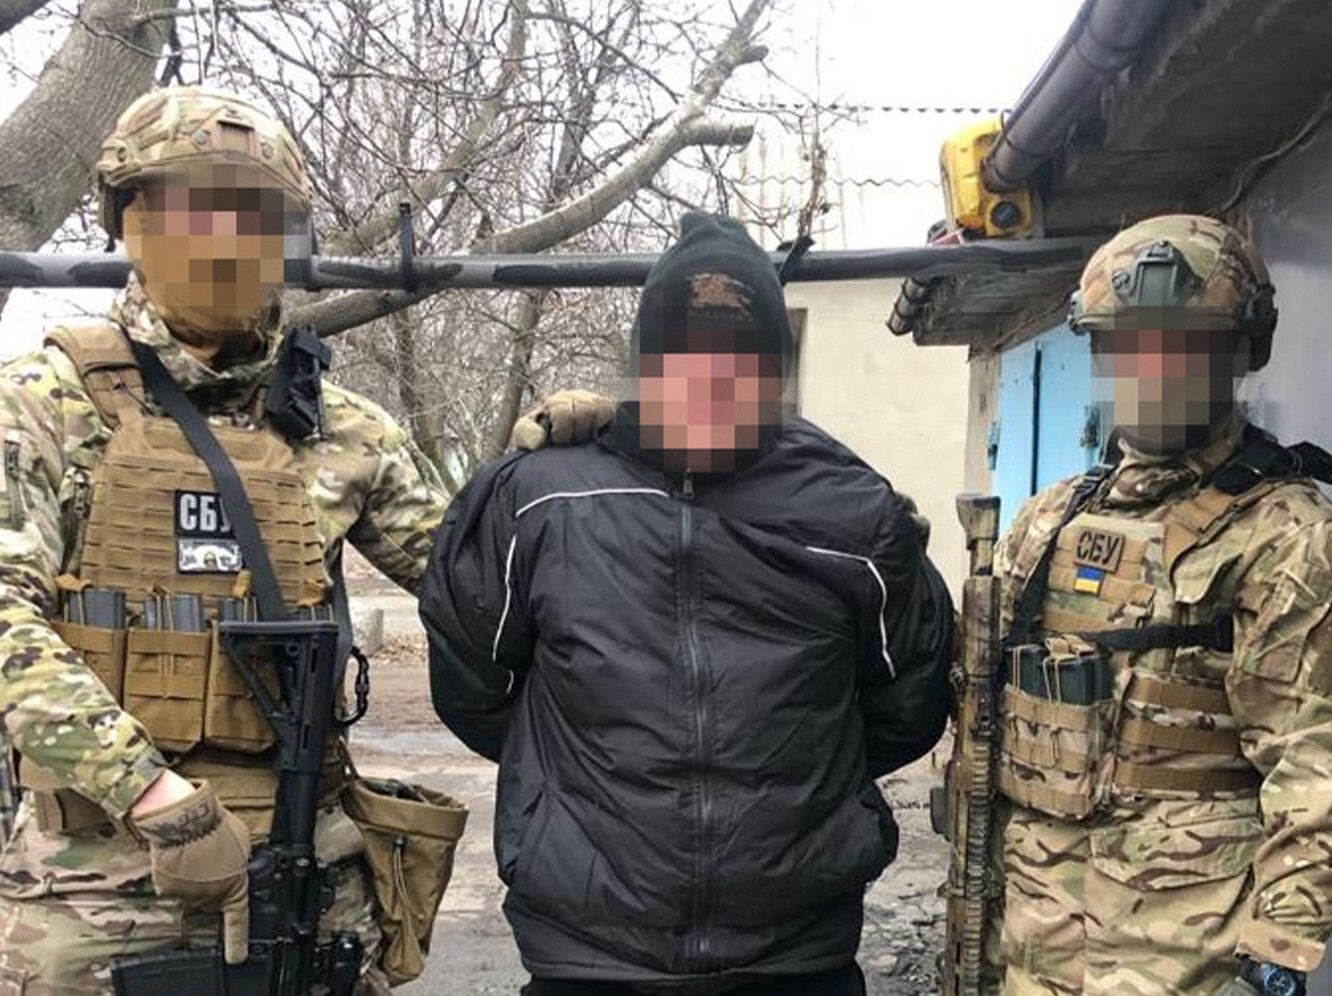 Контррозвідка Служба безпеки викрила агента головного управління генерального штабу зс рф (більше відомого як ГРУ) у ході контрдиверсійних заходів у прифронтових районах Донеччини.

